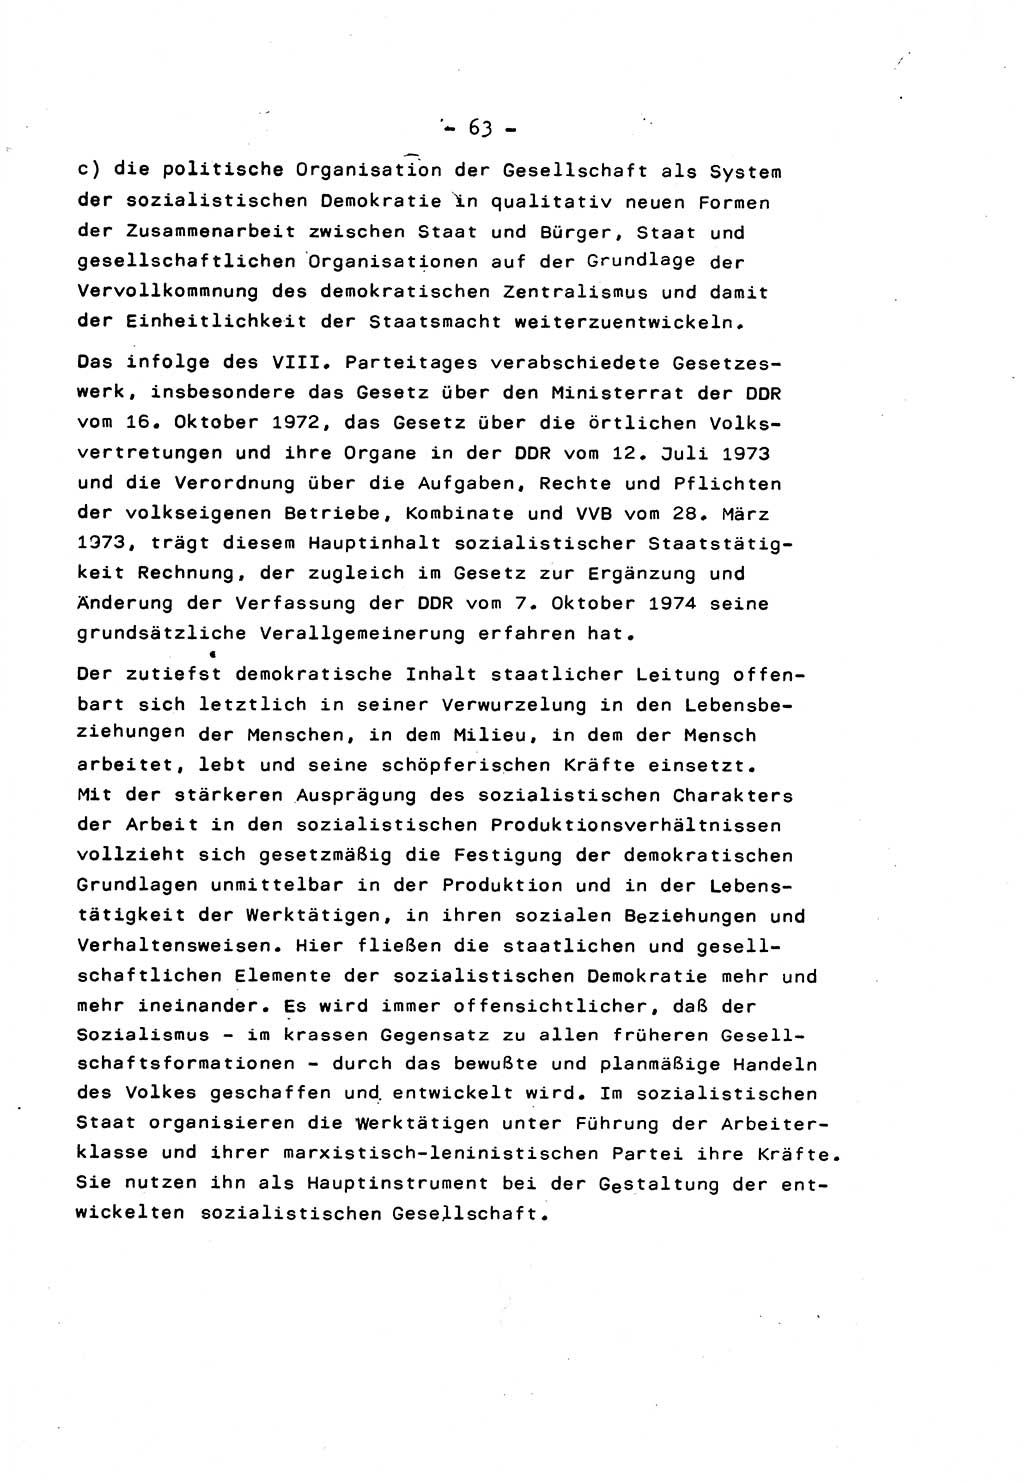 Marxistisch-leninistische Staats- und Rechtstheorie [Deutsche Demokratische Republik (DDR)] 1975, Seite 63 (ML St.-R.-Th. DDR 1975, S. 63)